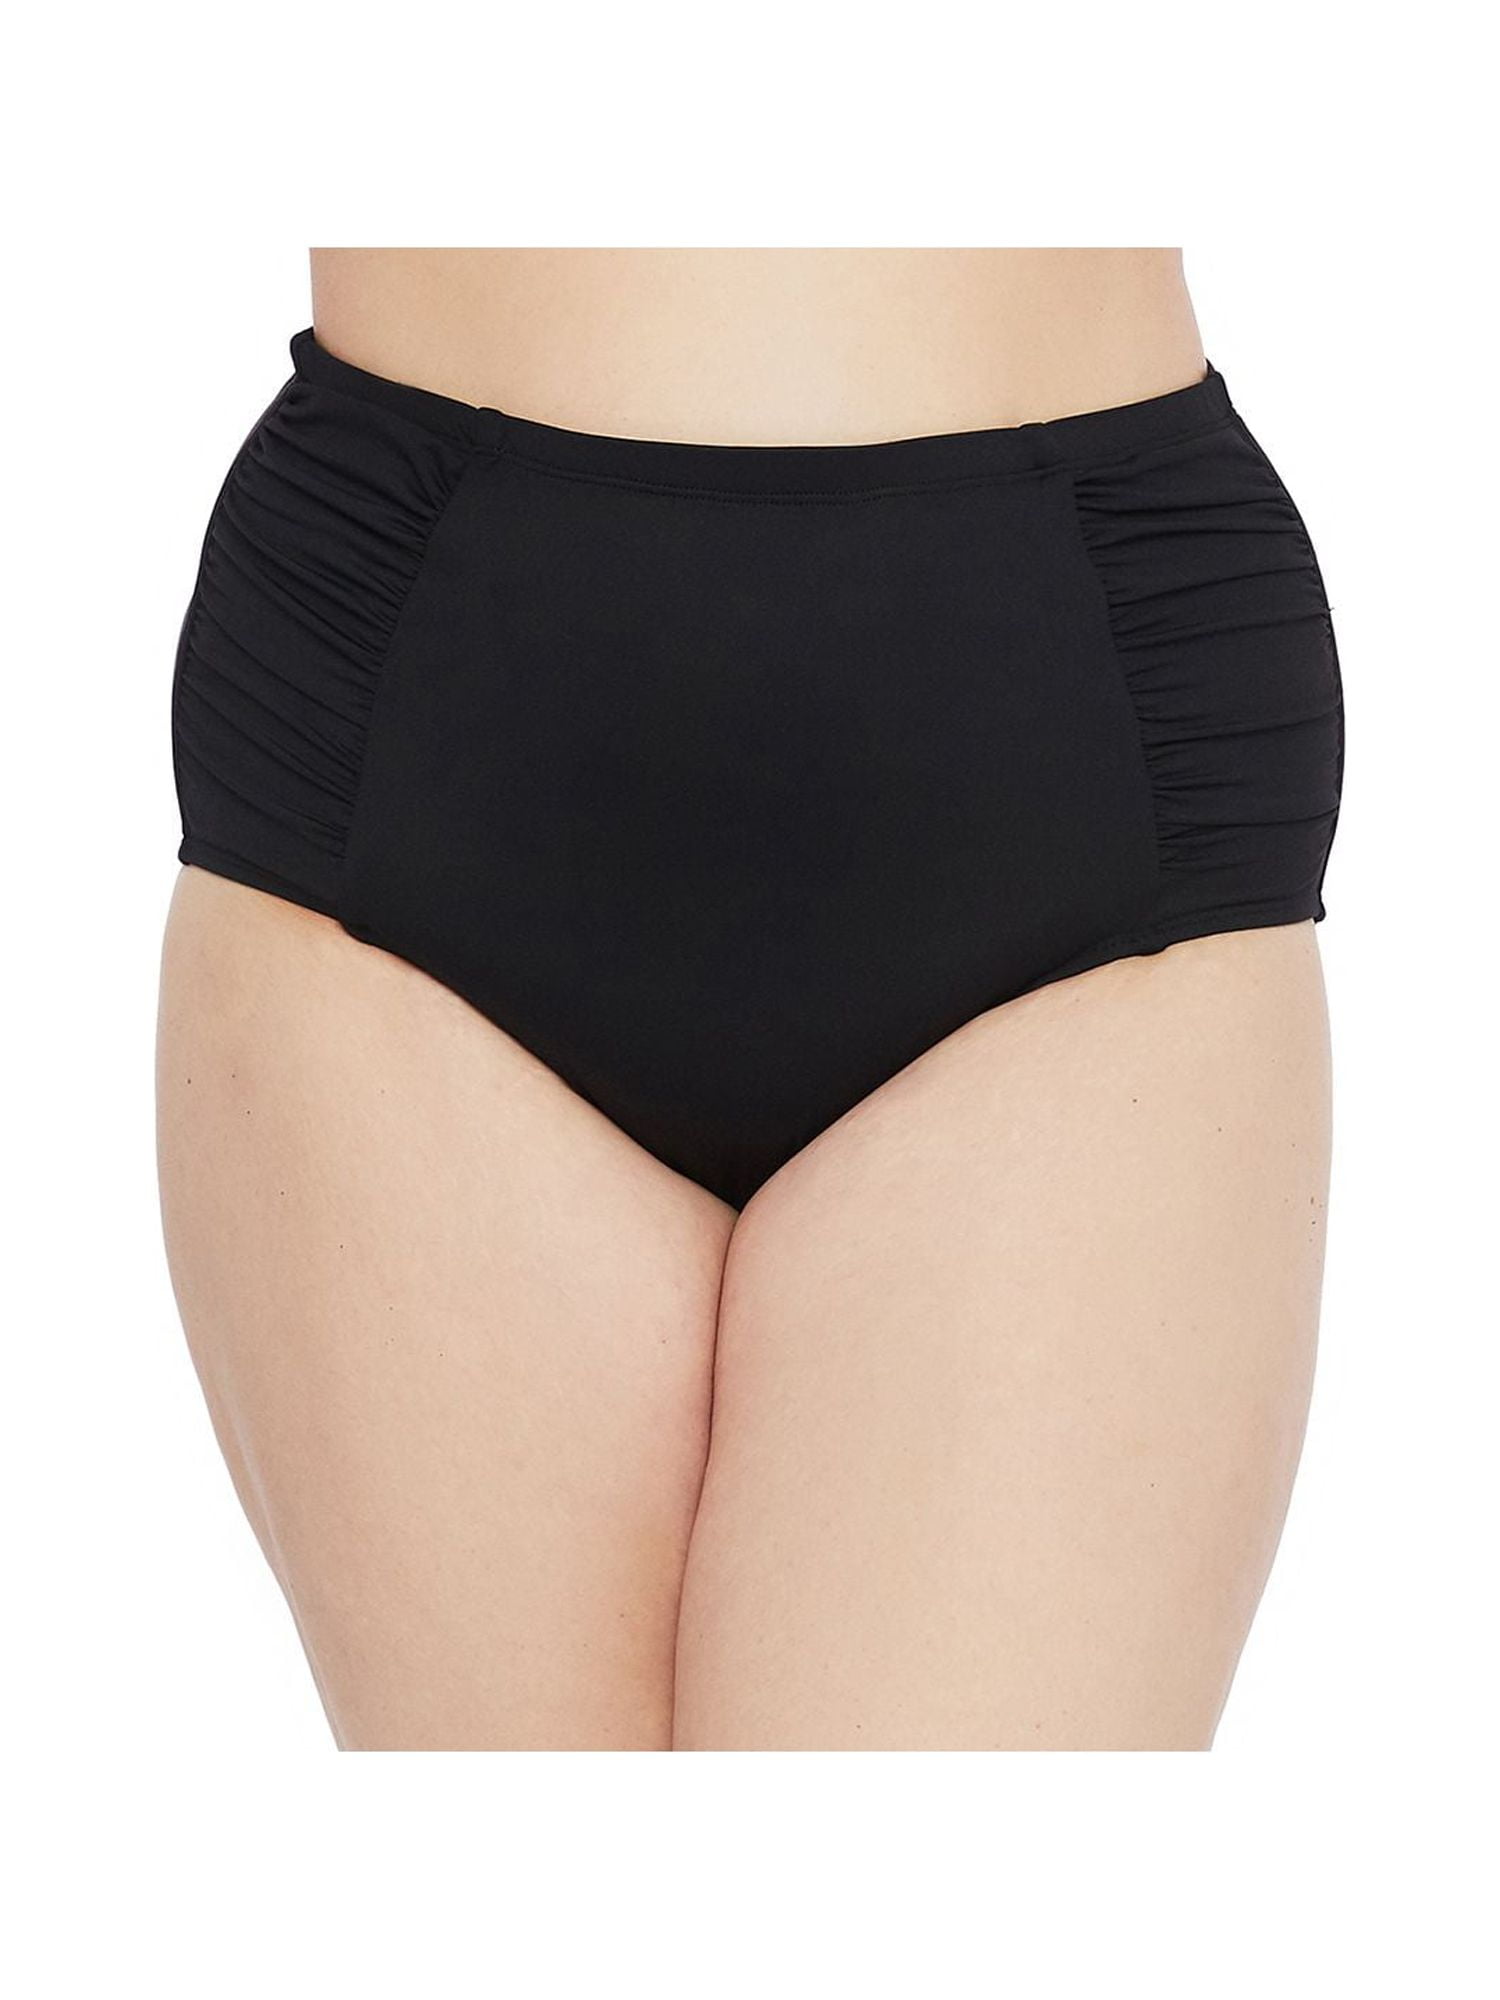 Women's Shirred High Waist Tummy Control Bikini Bottom